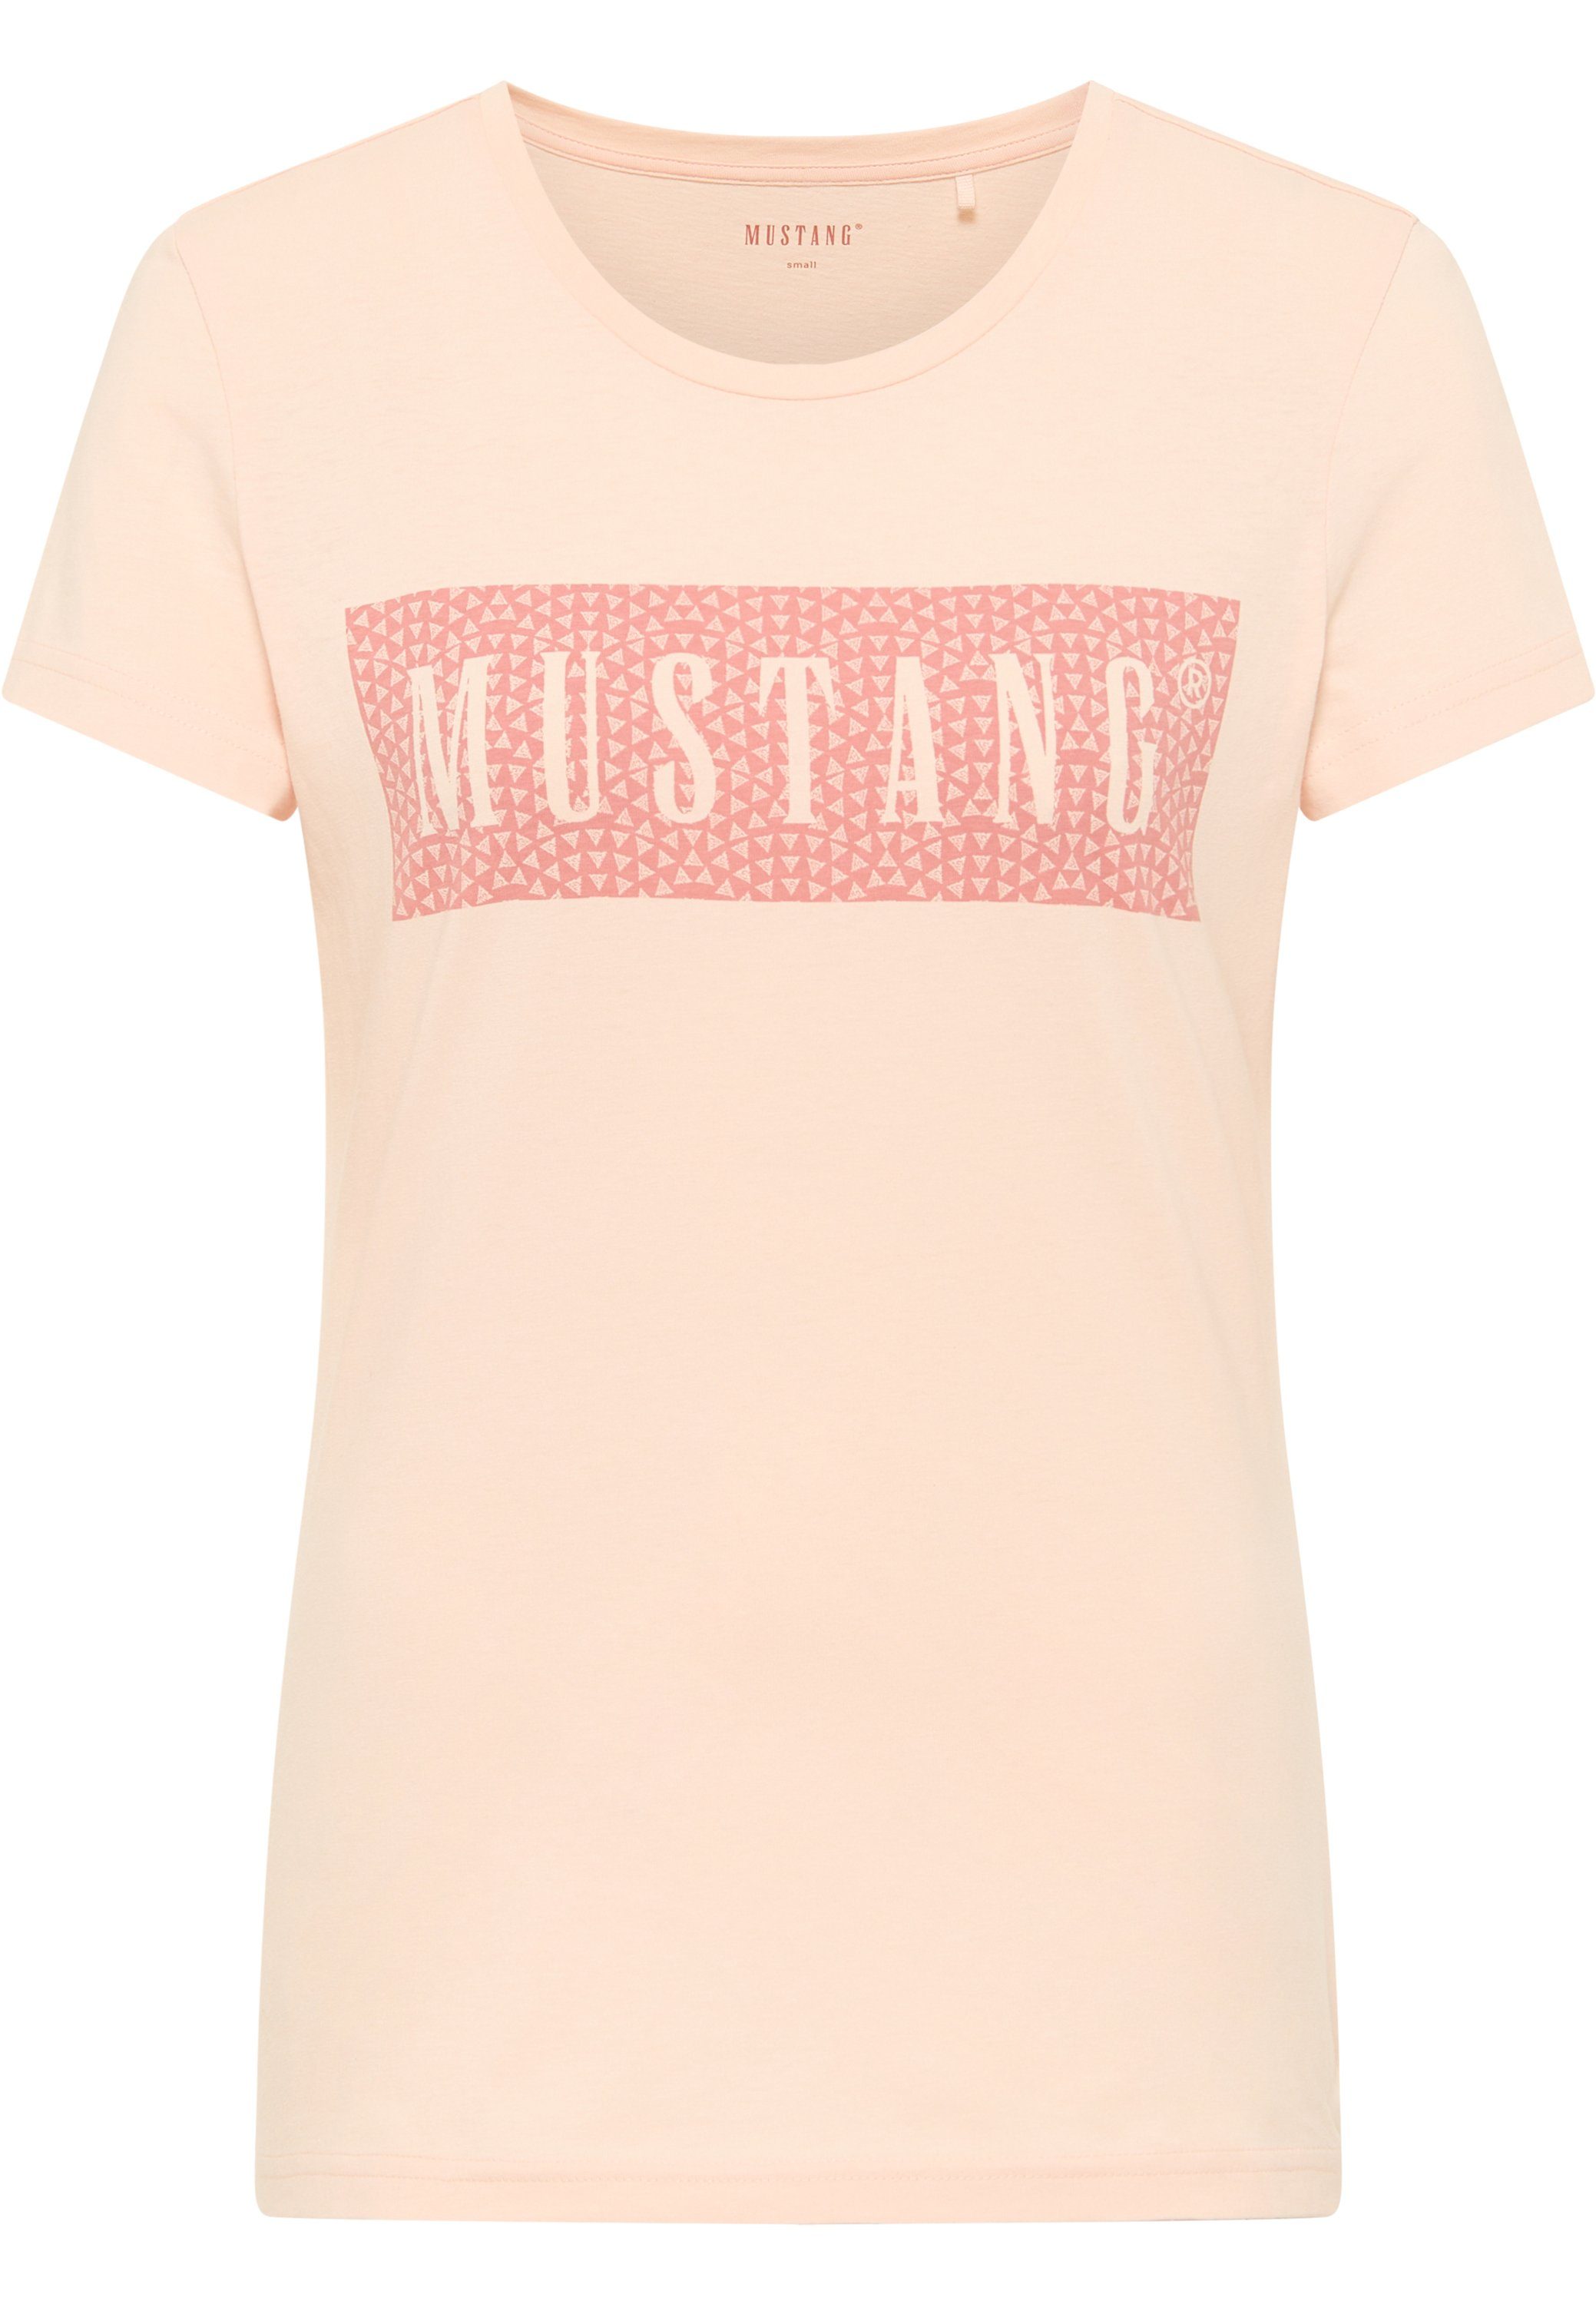 Mustang Print-Shirt hellrosa Kurzarmshirt MUSTANG T-Shirt